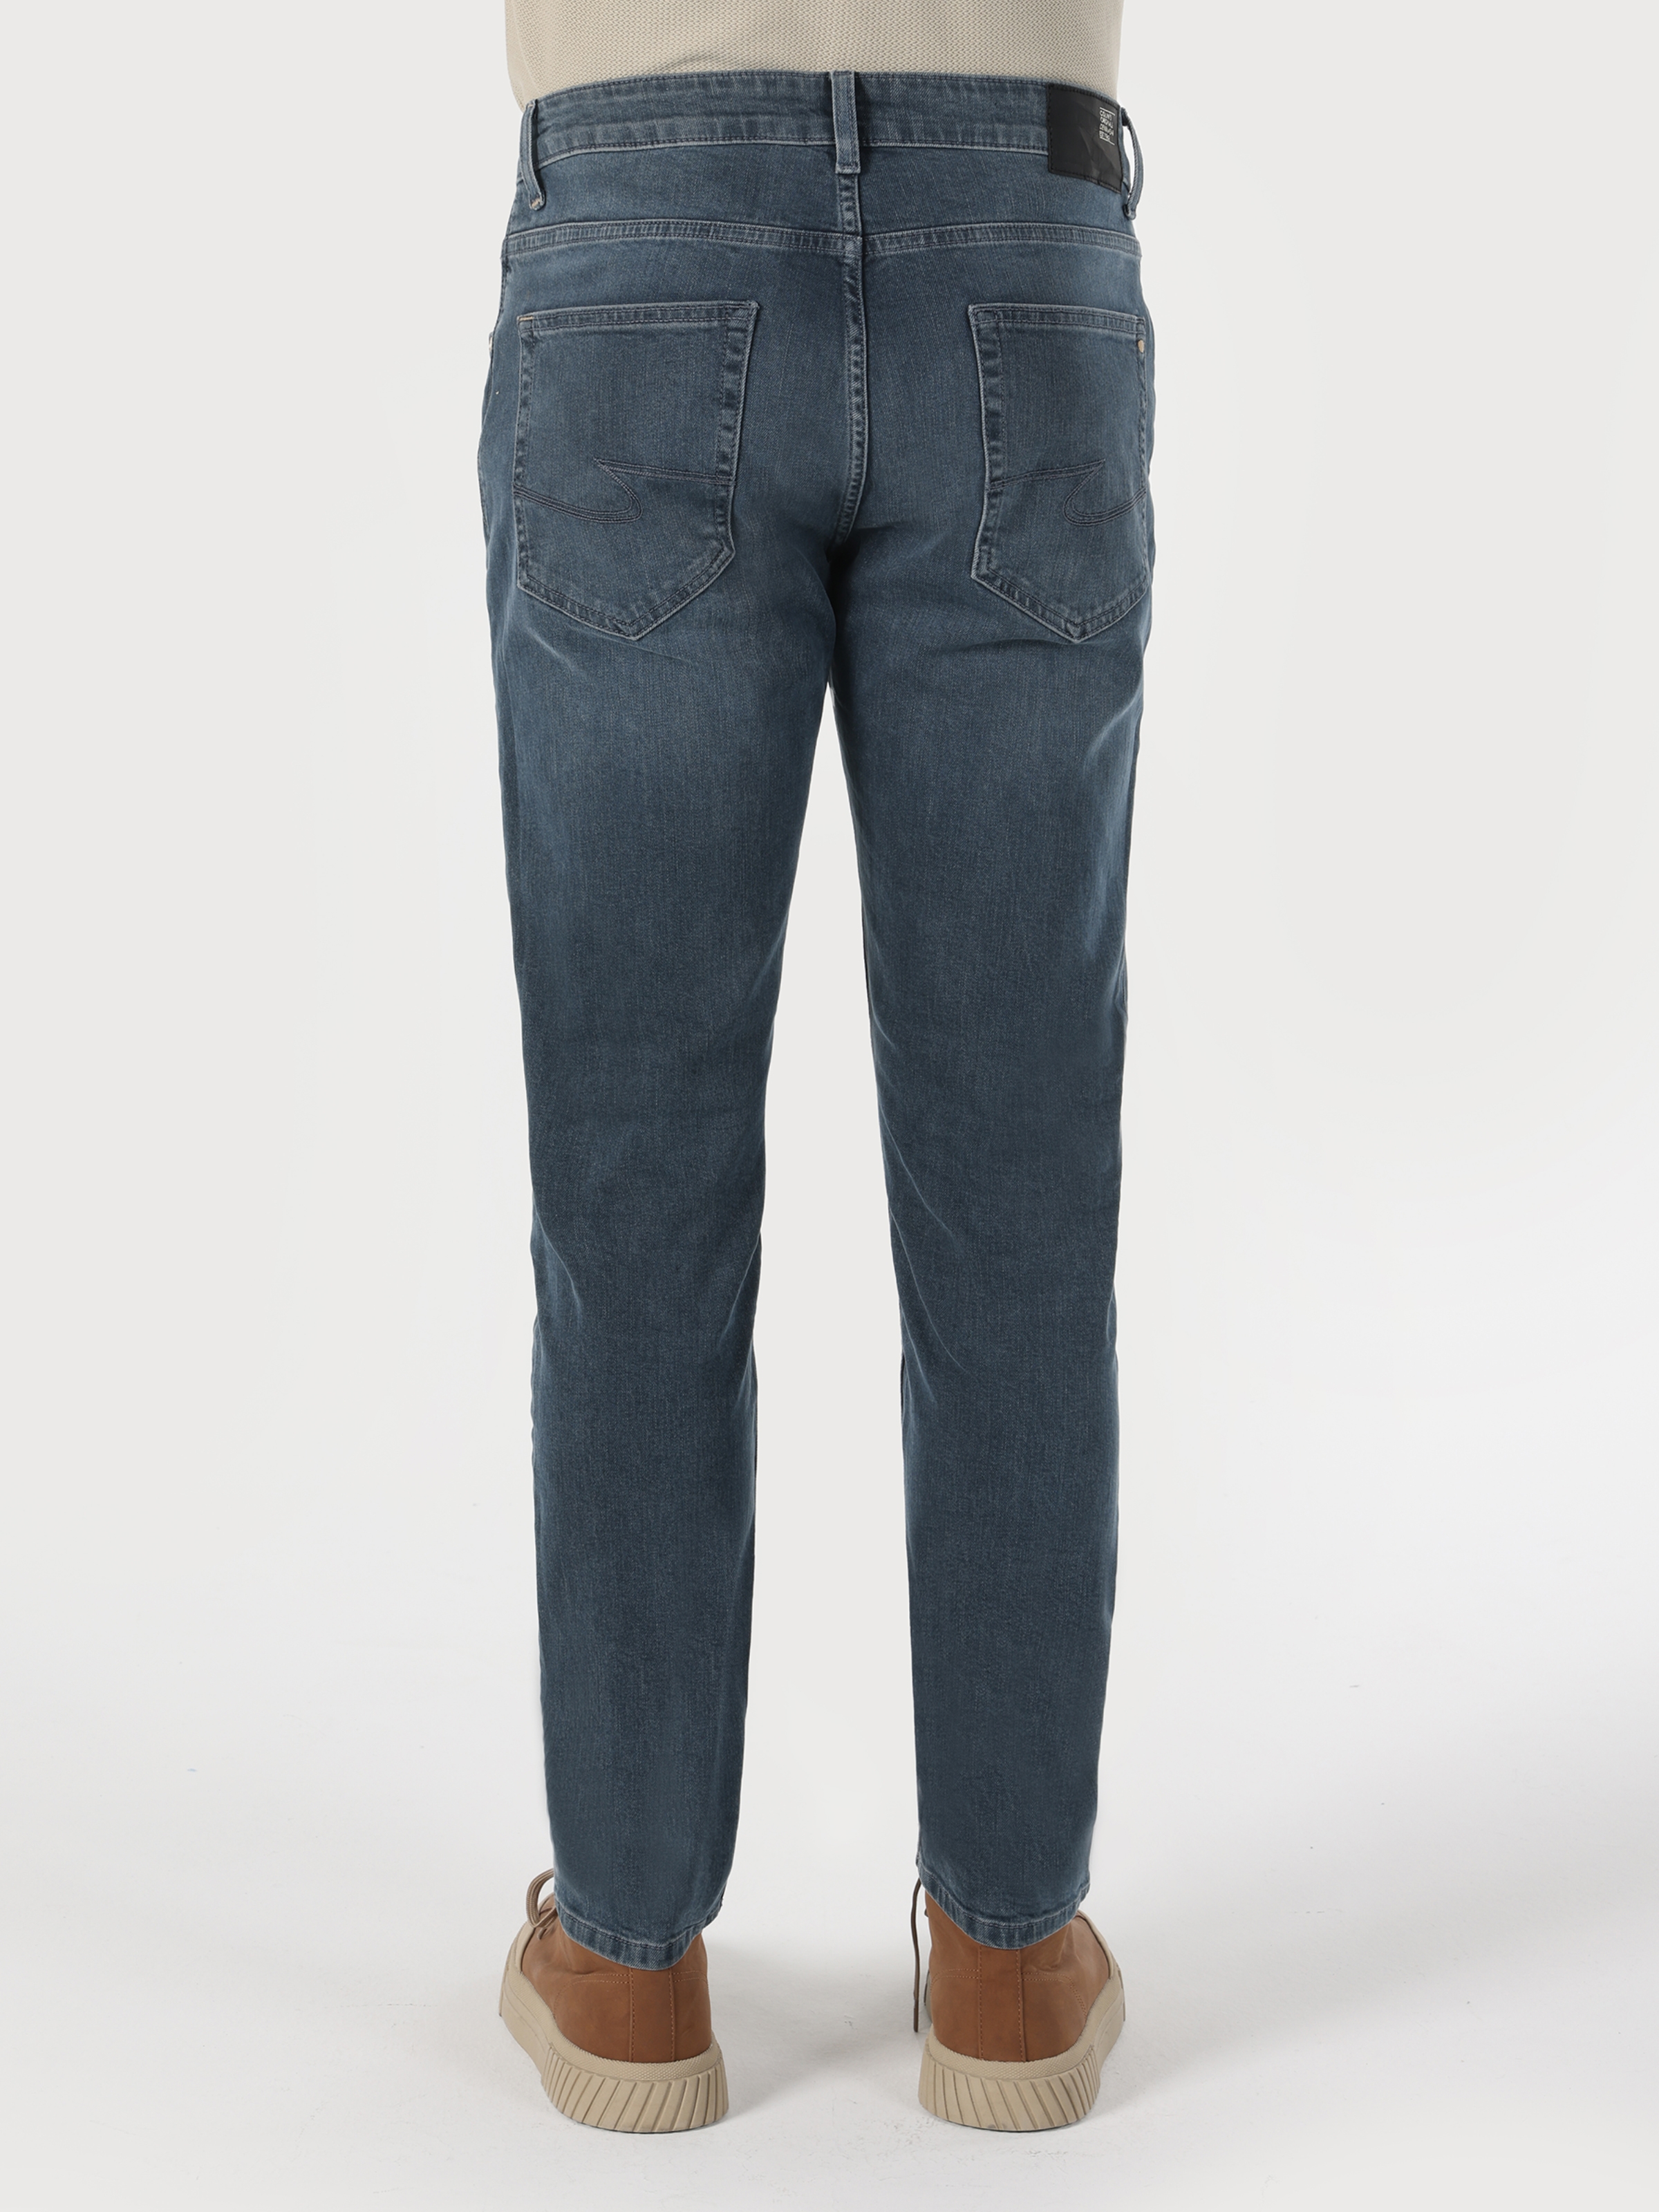 Afficher les détails de 067 Jack Normal Fit Taille Normale Jambe Étroite Pantalon Jean Bleu Foncé Pour Homme